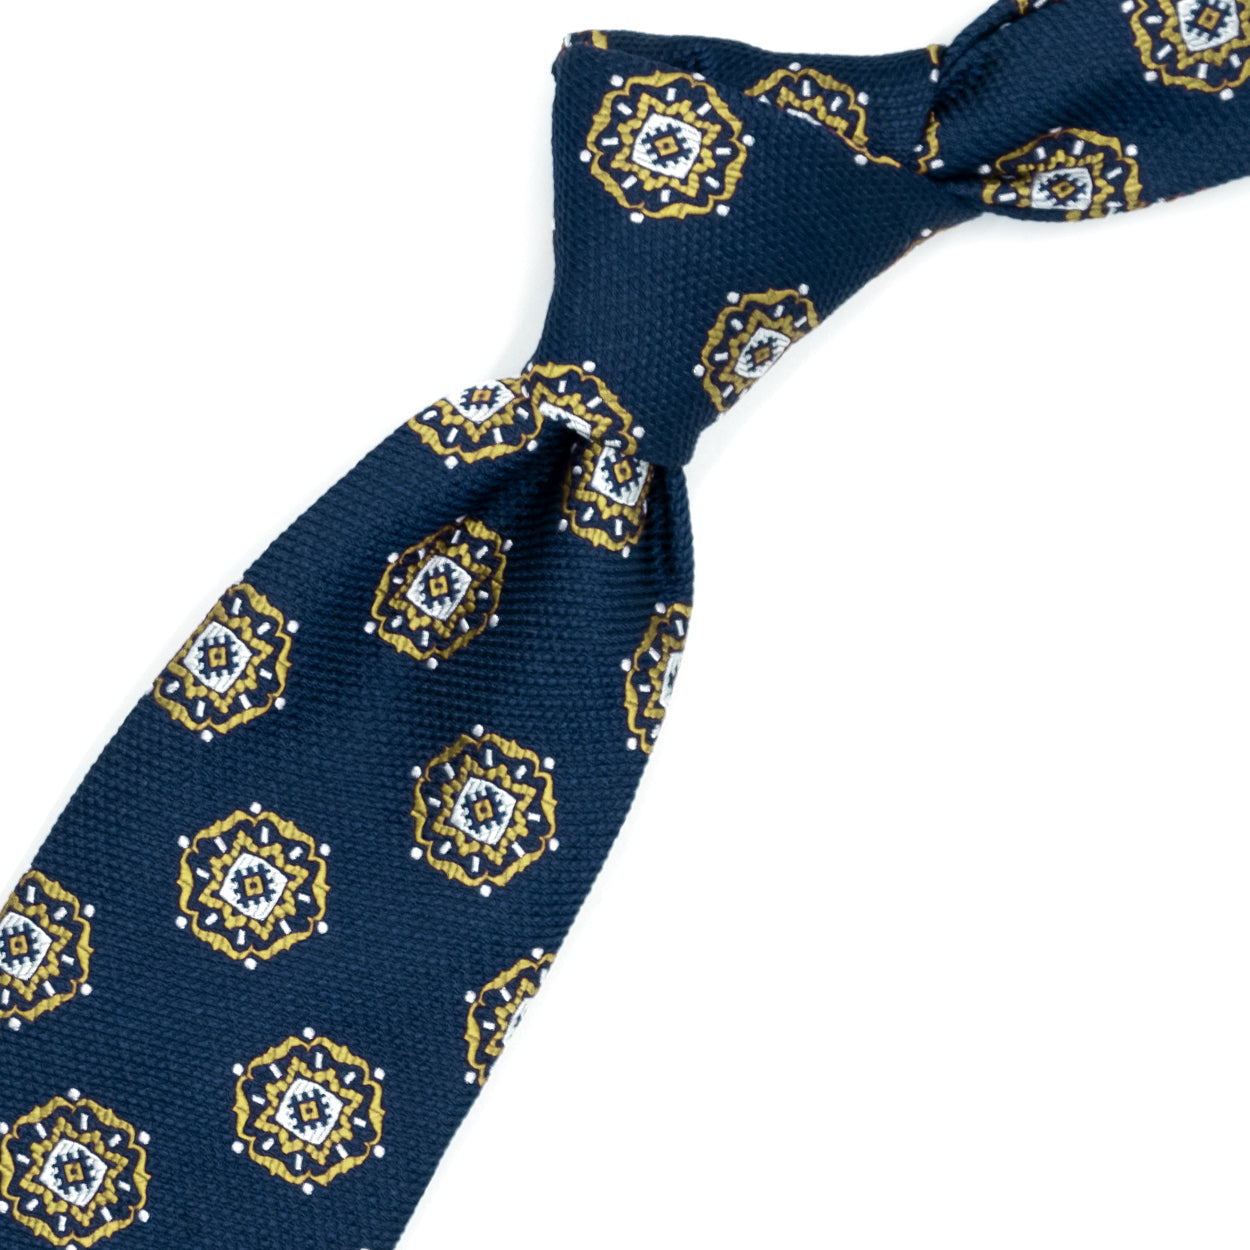 Cravatta blu con medaglioni gialli e bianchi